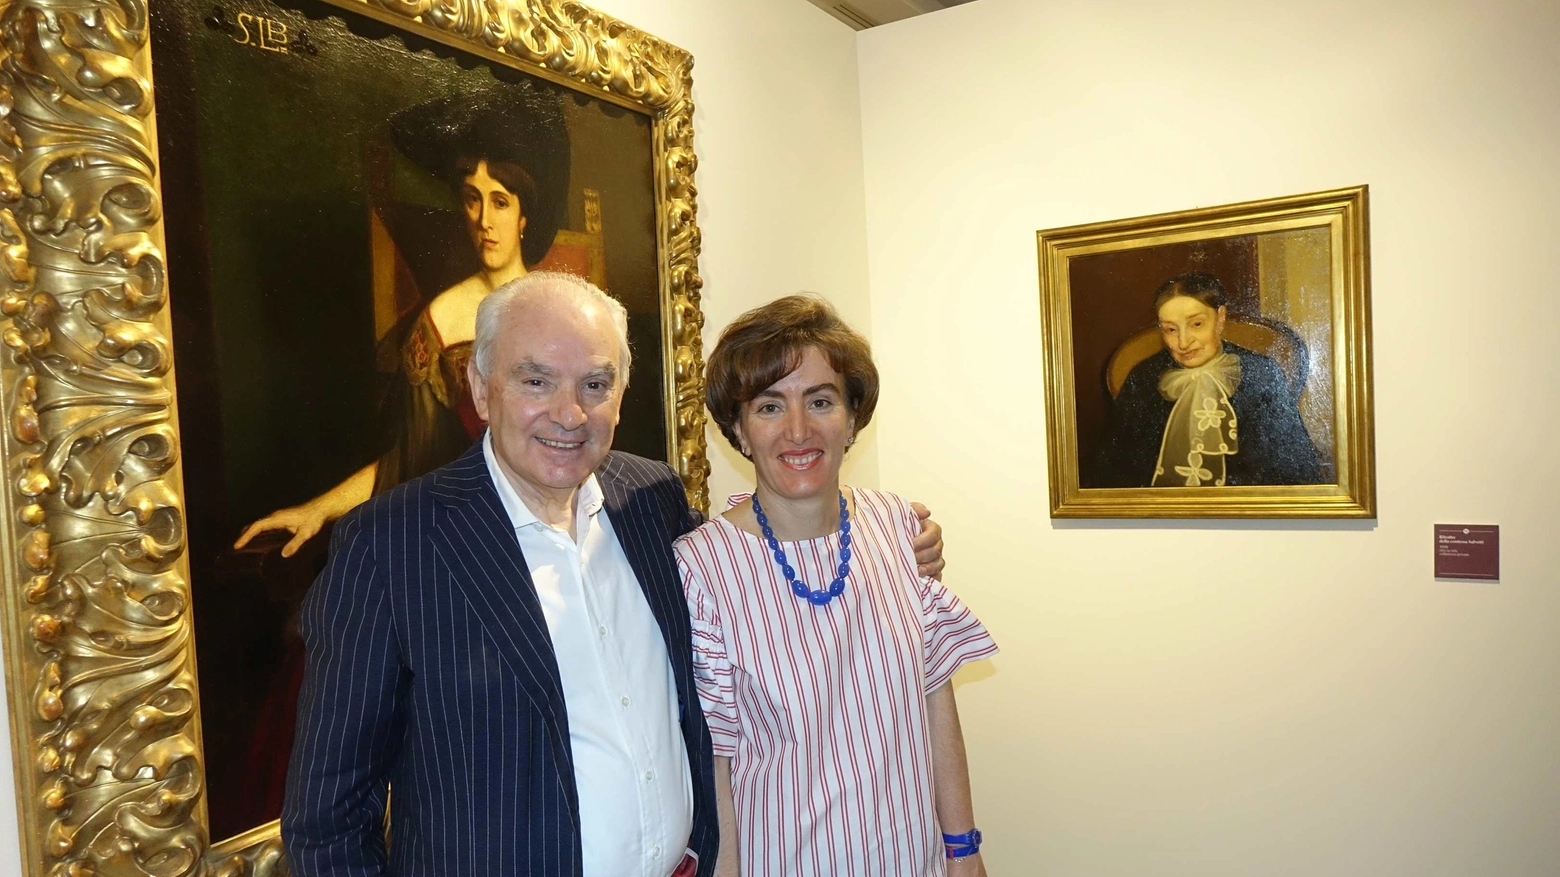 Giuliano ed Elisabetta Matteucci durante la presentazione della mostra "Ghiglia"